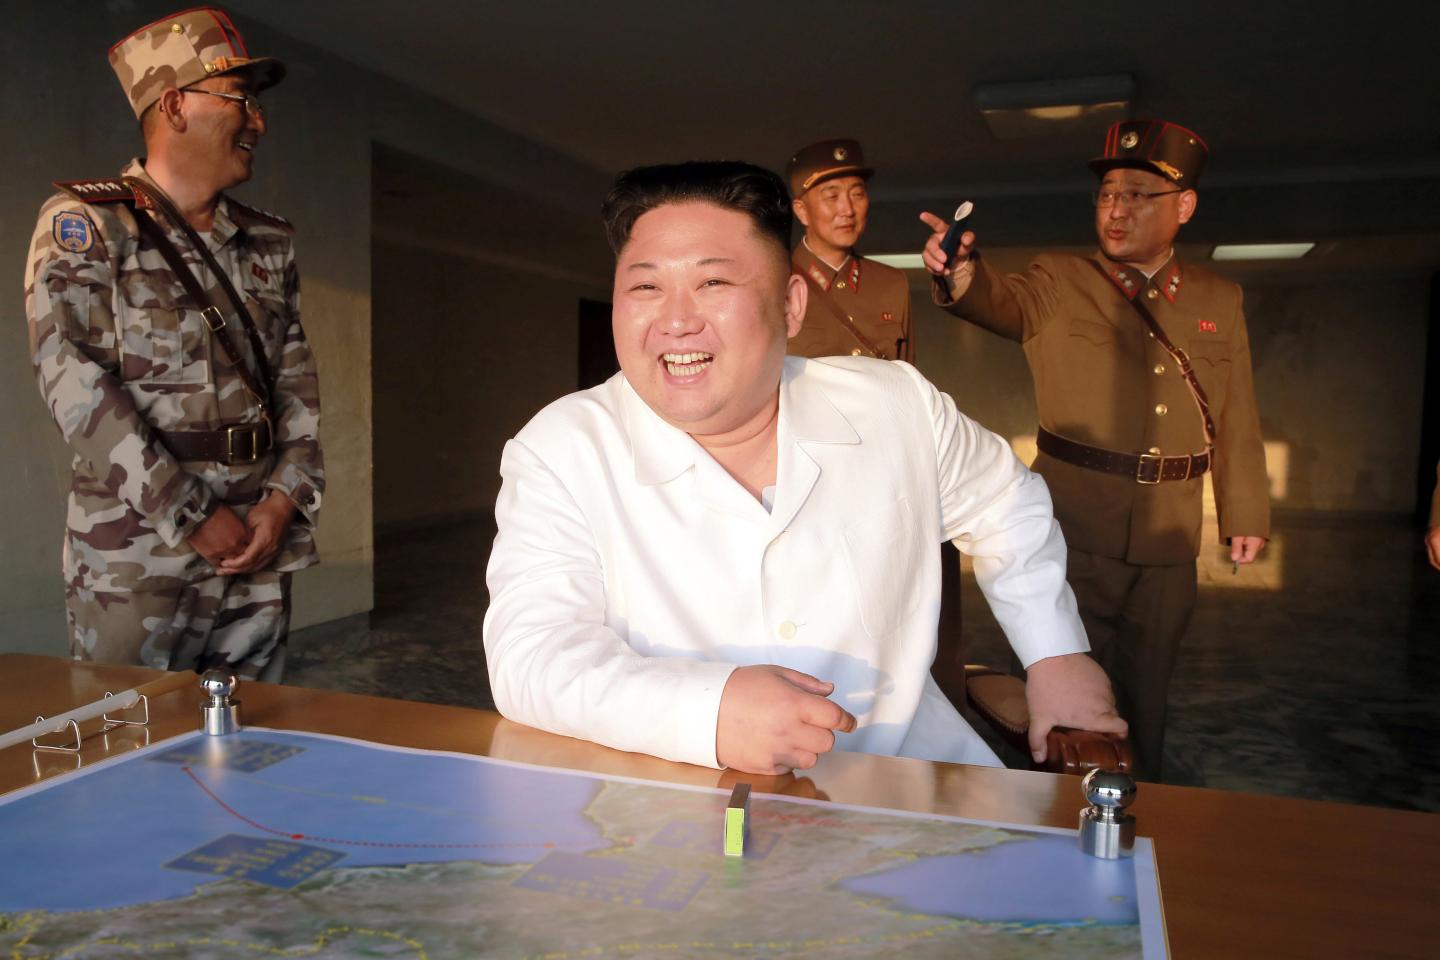 Уряд КНДР повідомив про «фінальну фазу перед ядерною війною»